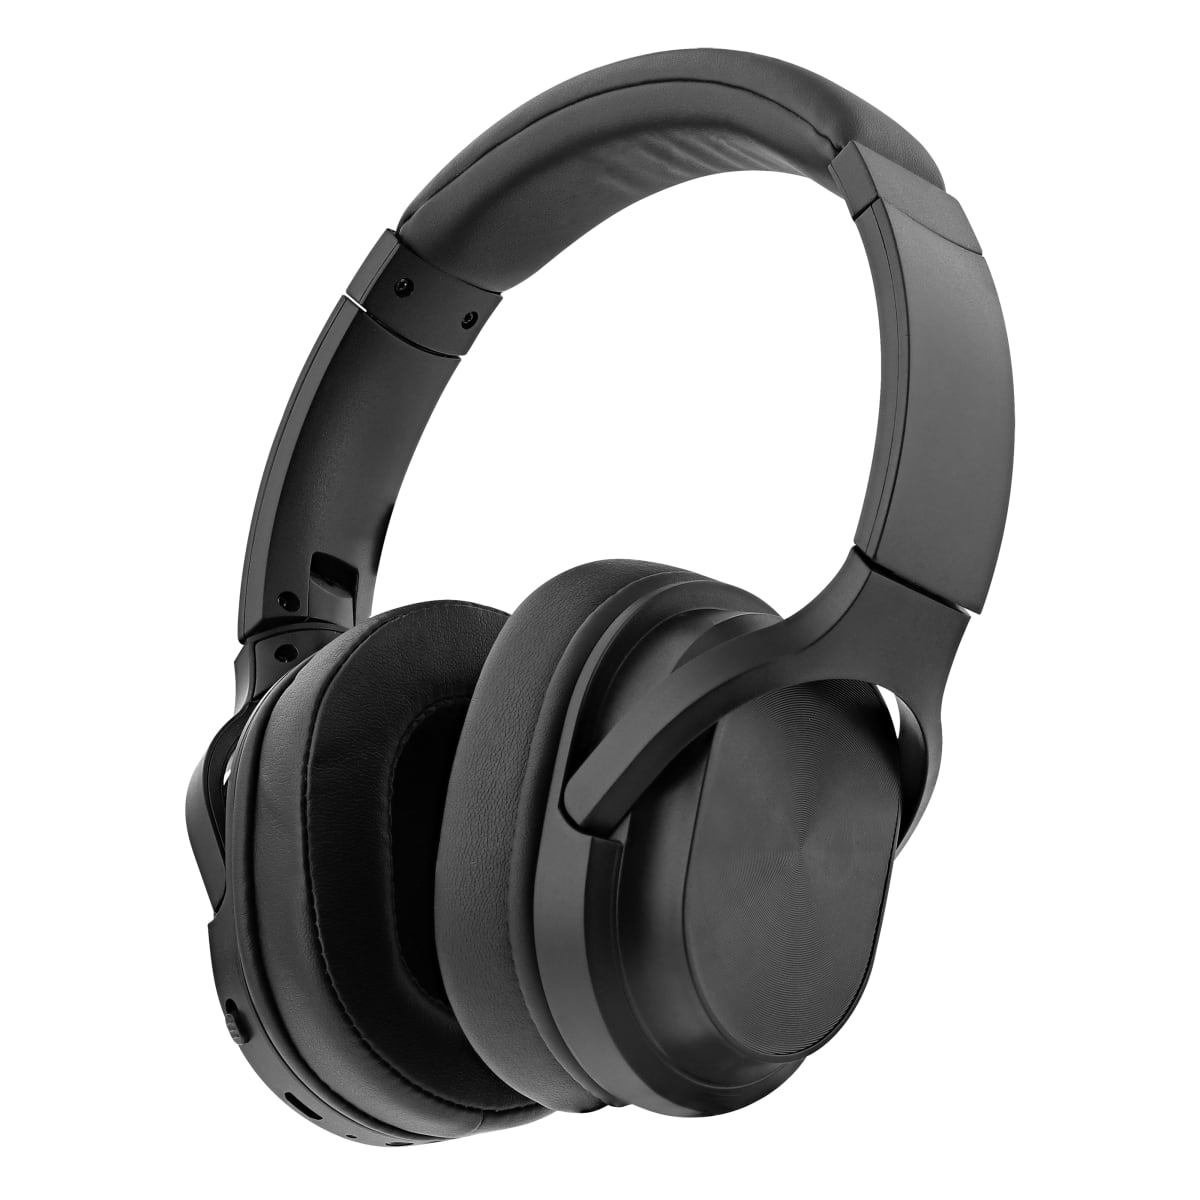 Fones de ouvido Bluetooth FLOW pretos com redução de ruído ativa